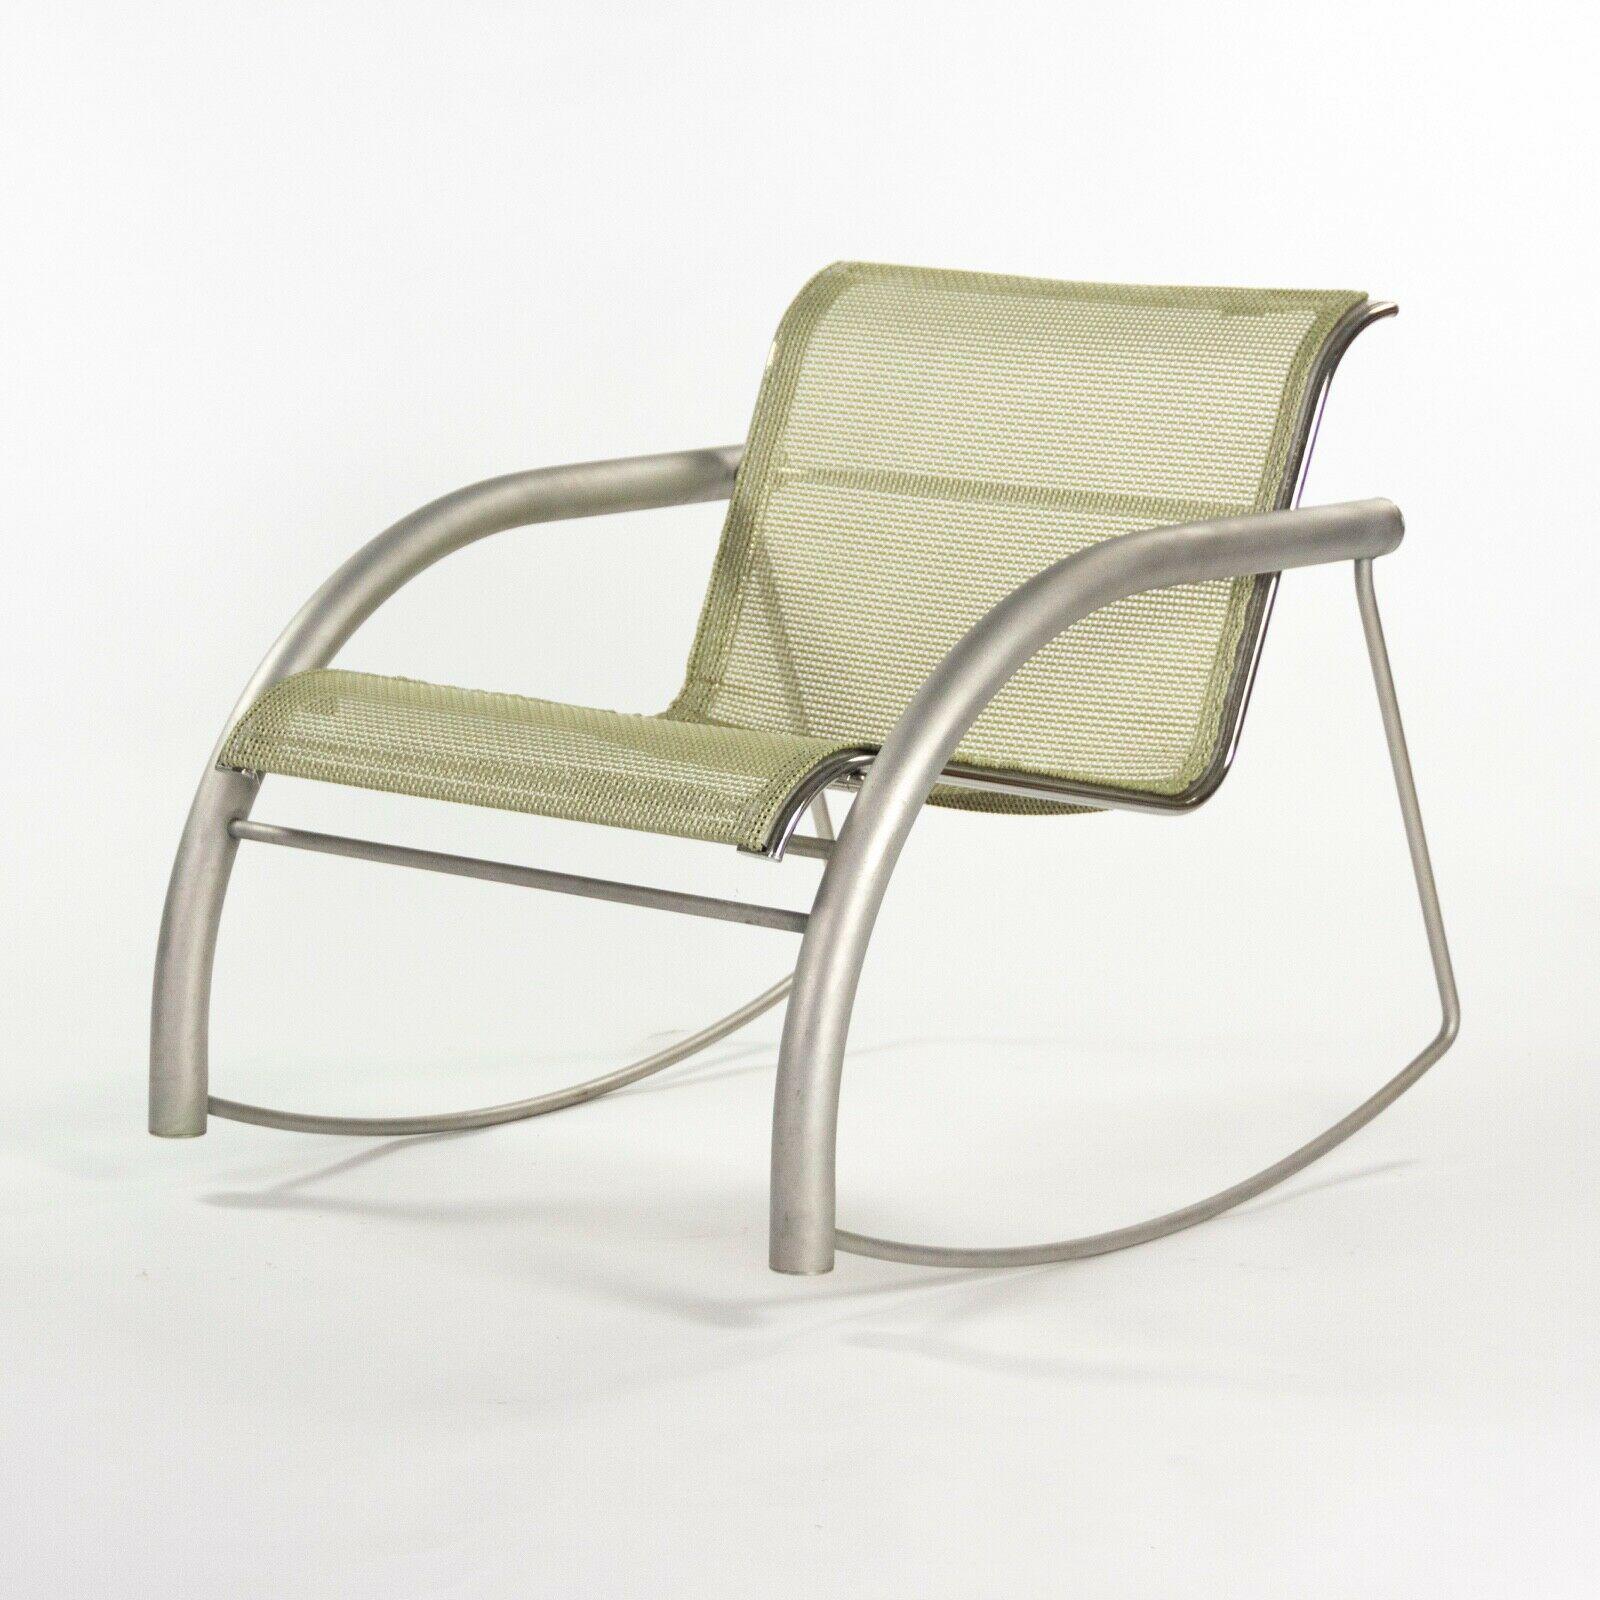 Prototype de chaise à bascule Richard Schultz 2002 Collection en acier inoxydable et maille 2